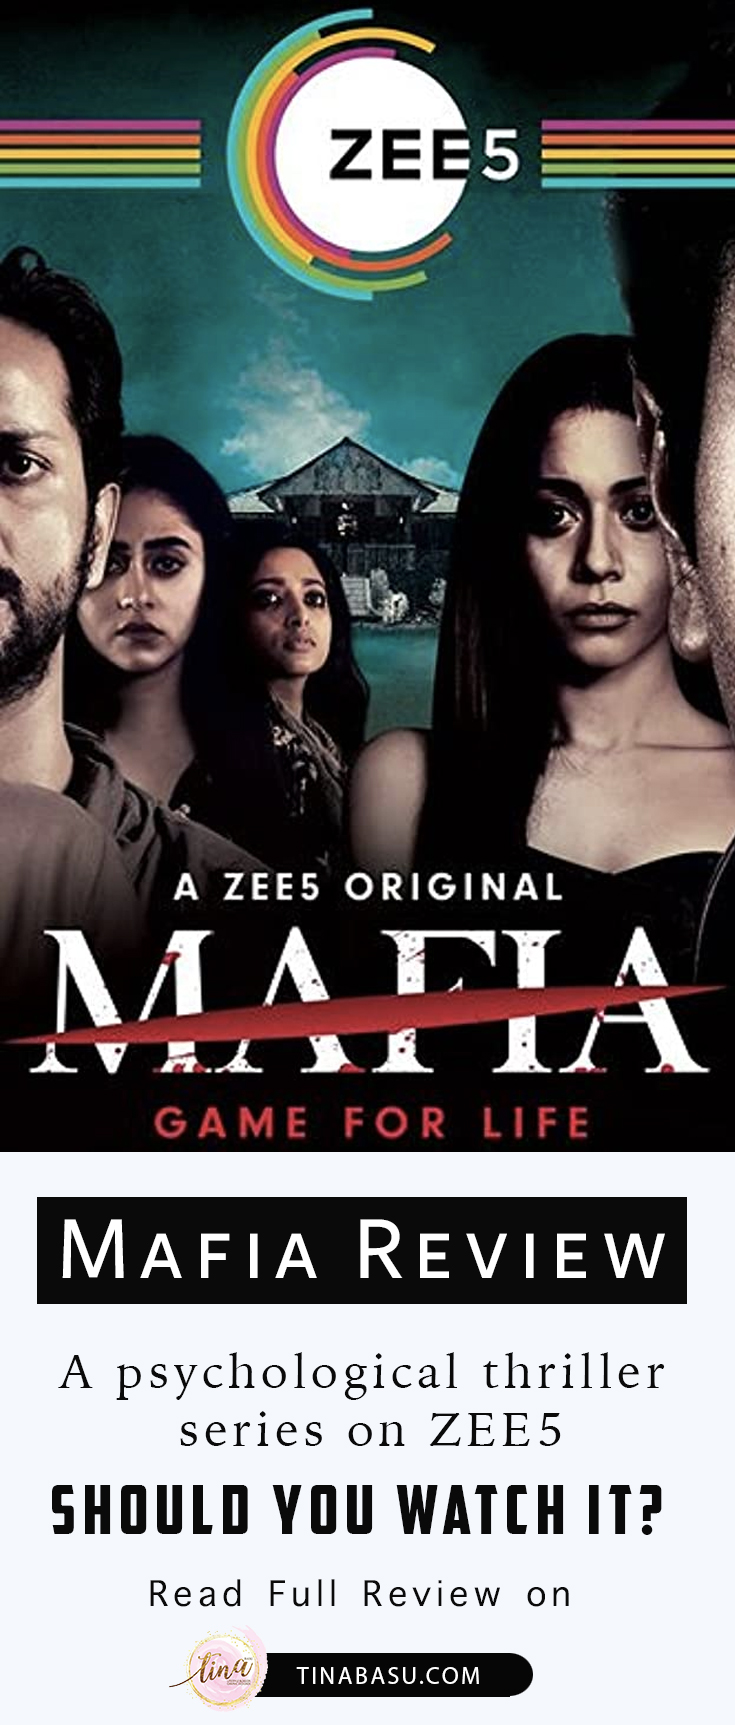 mafia zee5 review